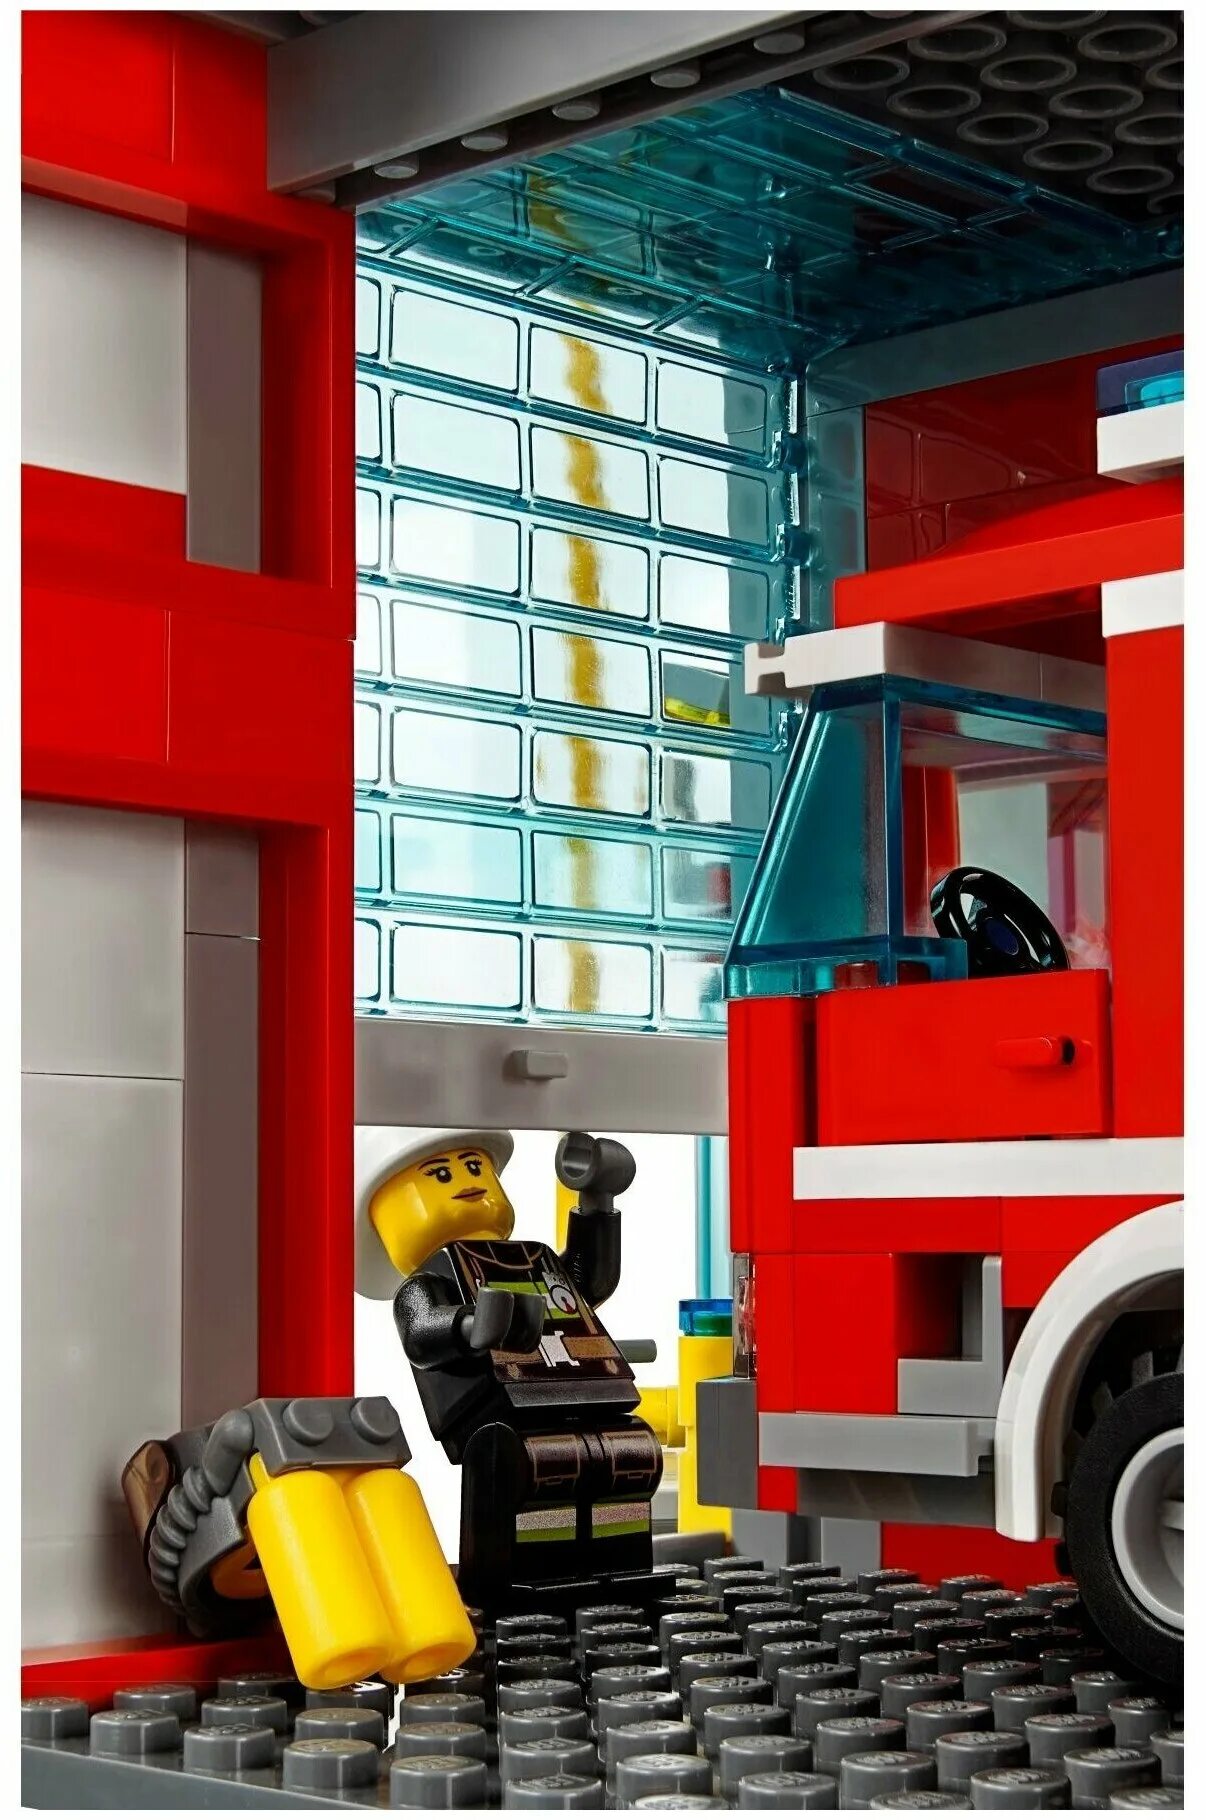 Лего Сити 60110. LEGO пожарная станция 60110. LEGO City 60110. Лего пожарные 60110. Сити пожарная